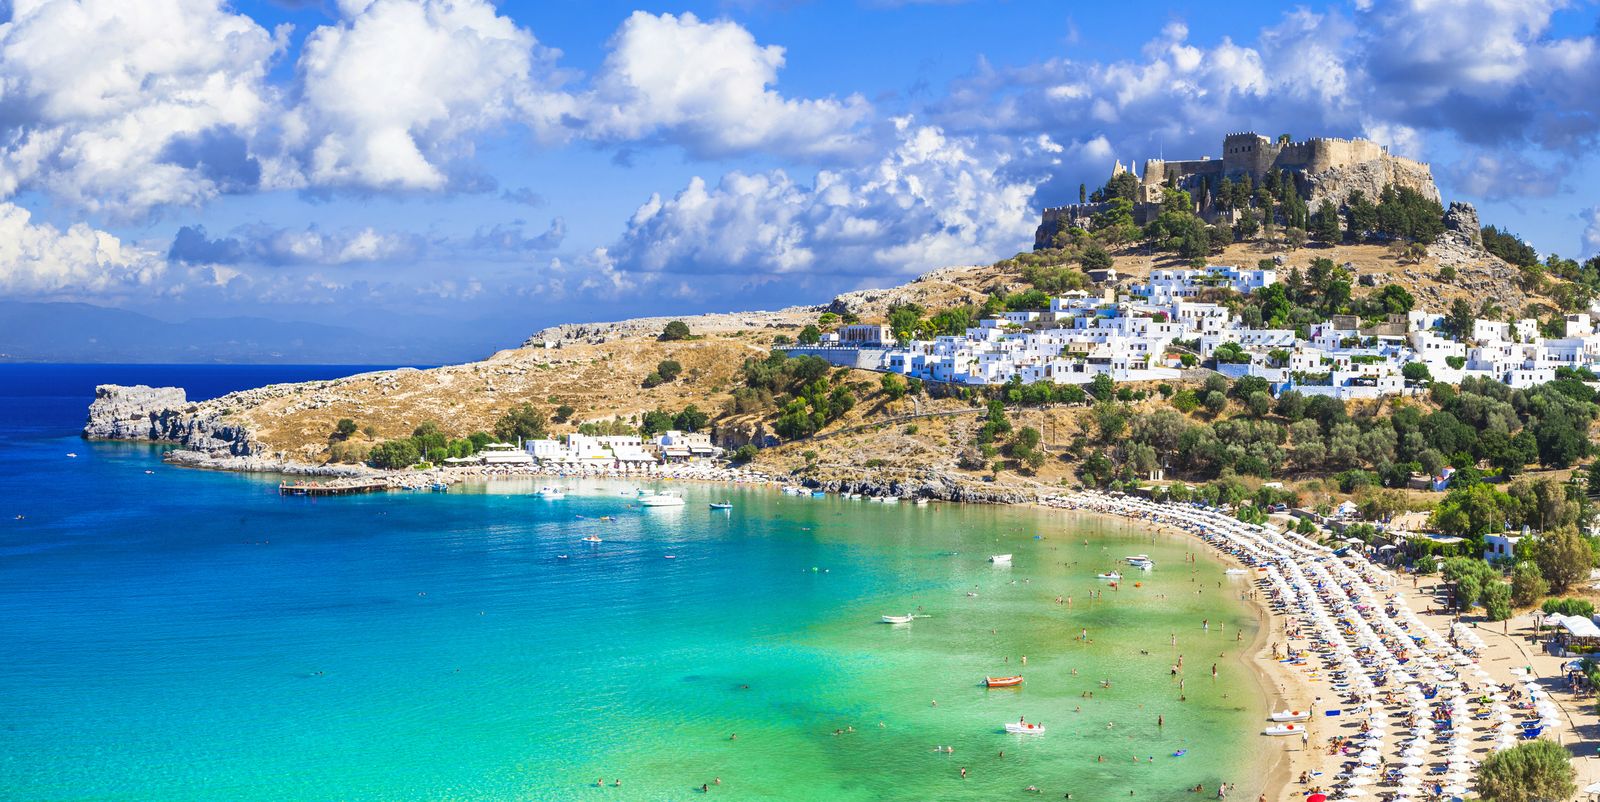 Vacanta in Grecia - Care sunt cele mai apreciate si frecventate insule